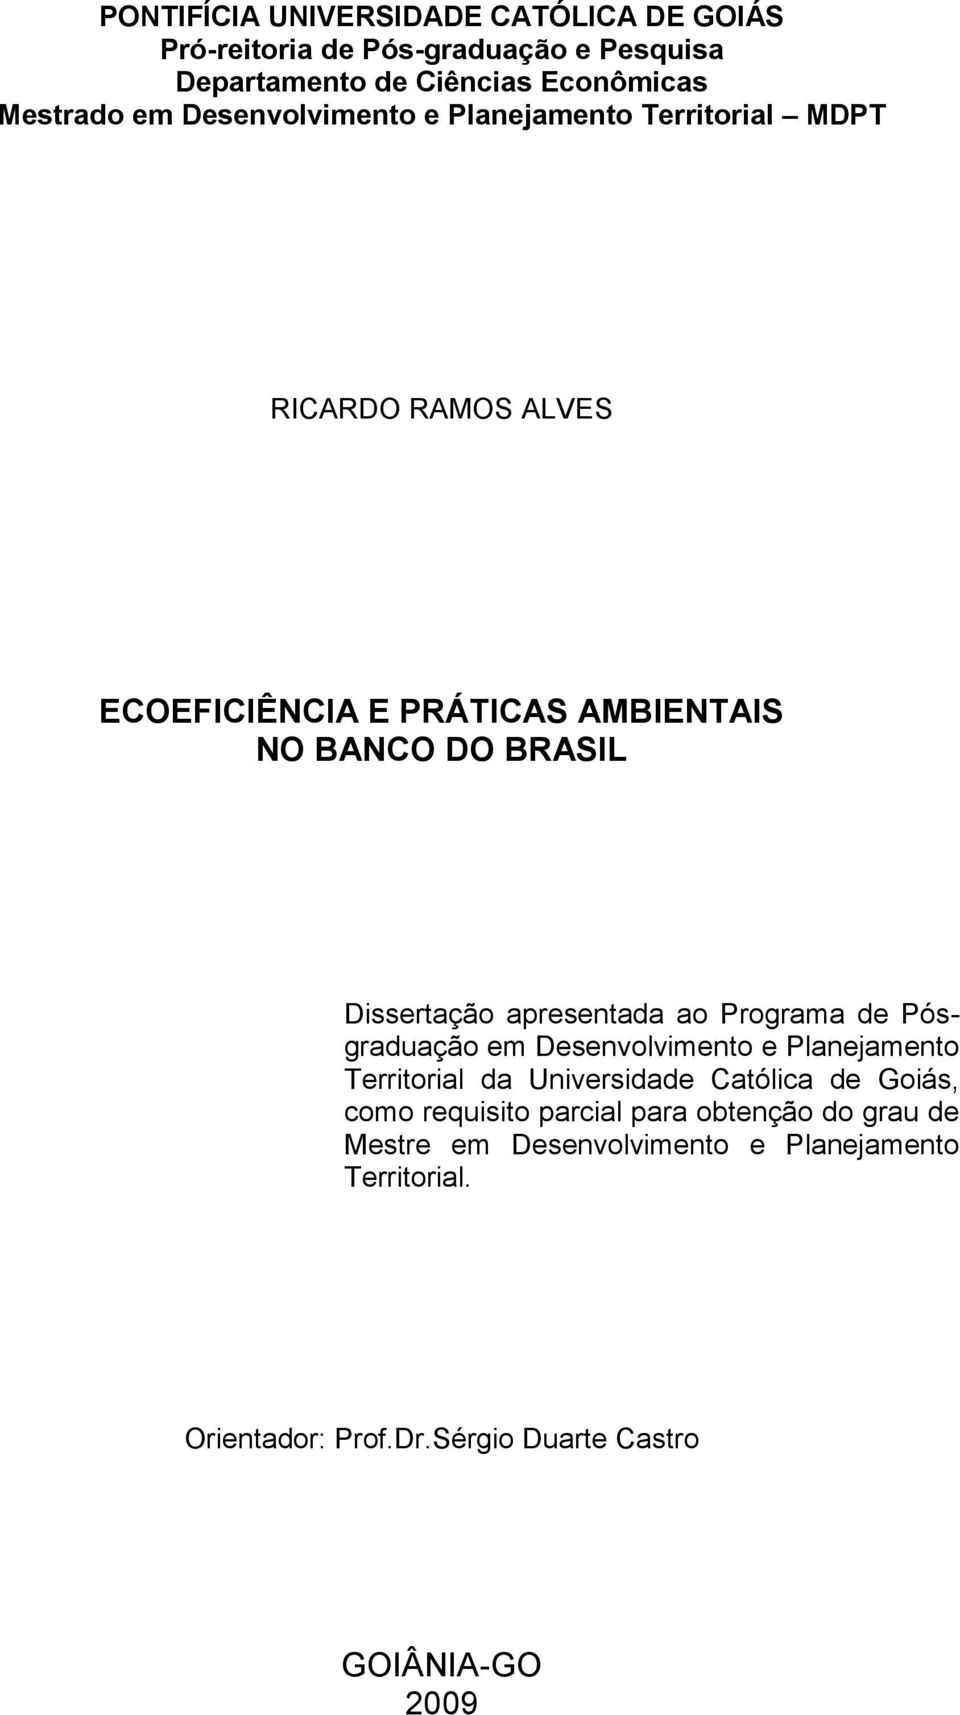 apresentada ao Programa de Pósgraduação em Desenvolvimento e Planejamento Territorial da Universidade Católica de Goiás, como requisito